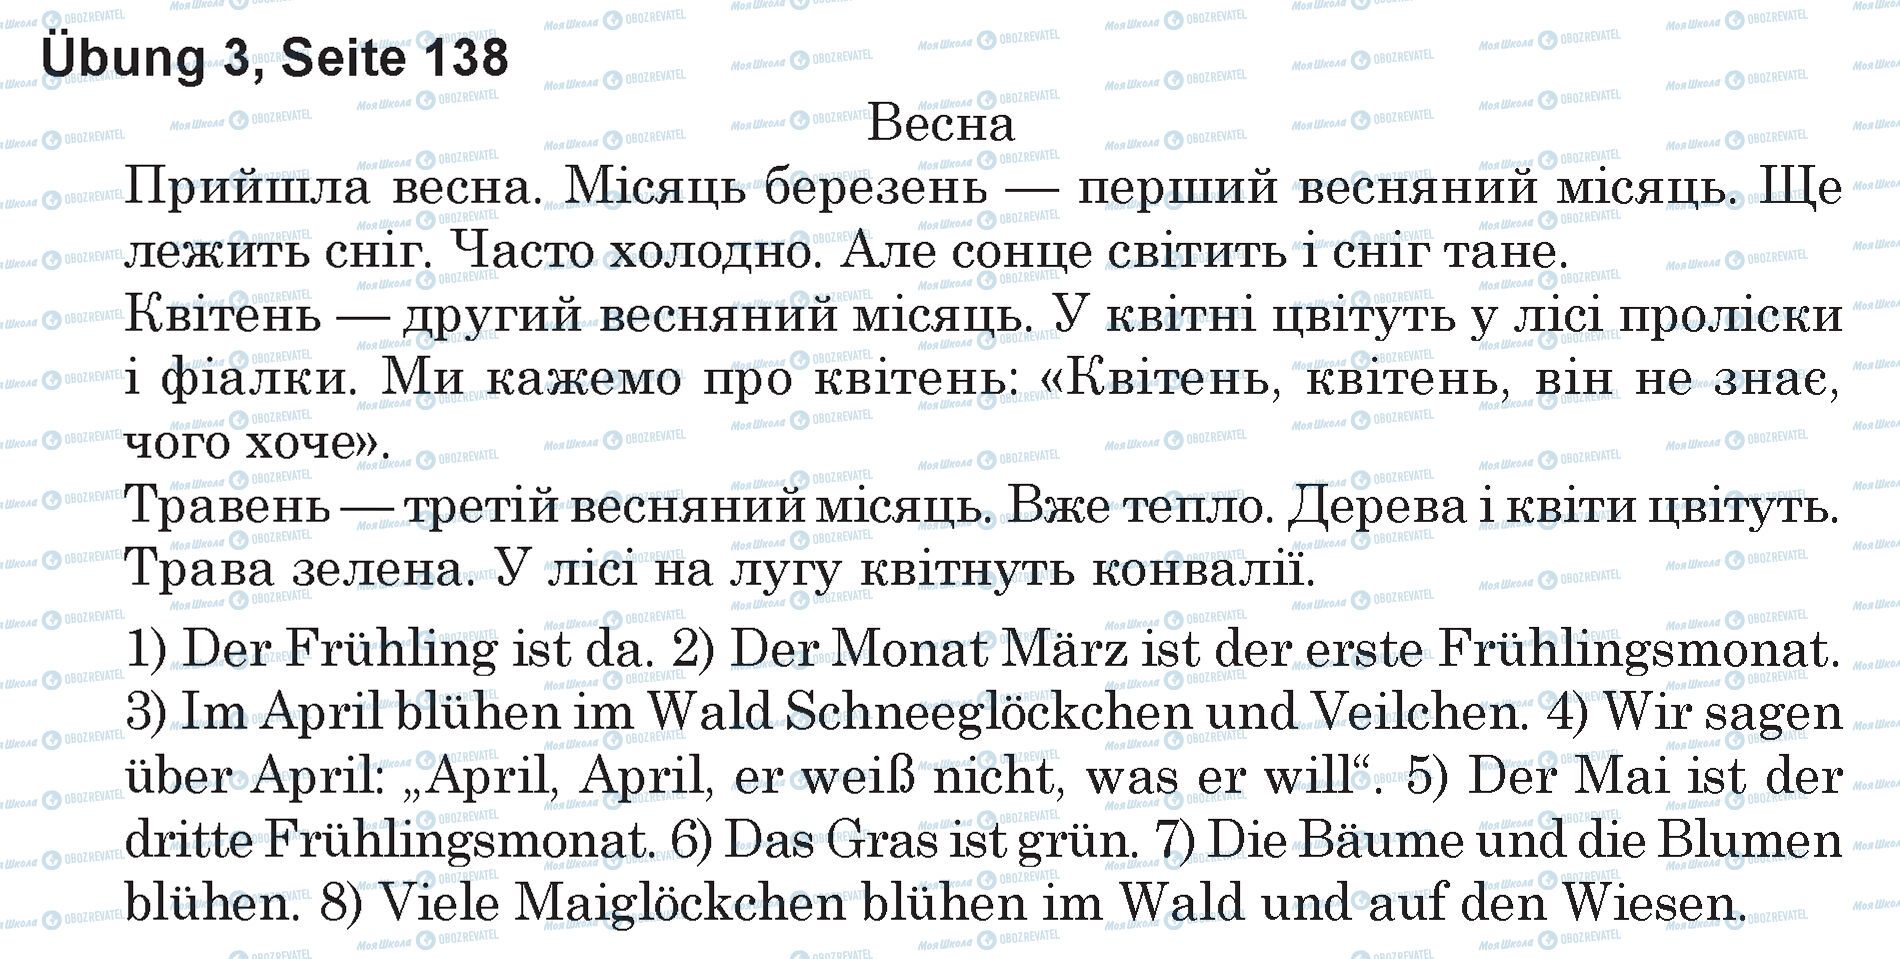 ГДЗ Немецкий язык 5 класс страница Ubung 3, Seite 138